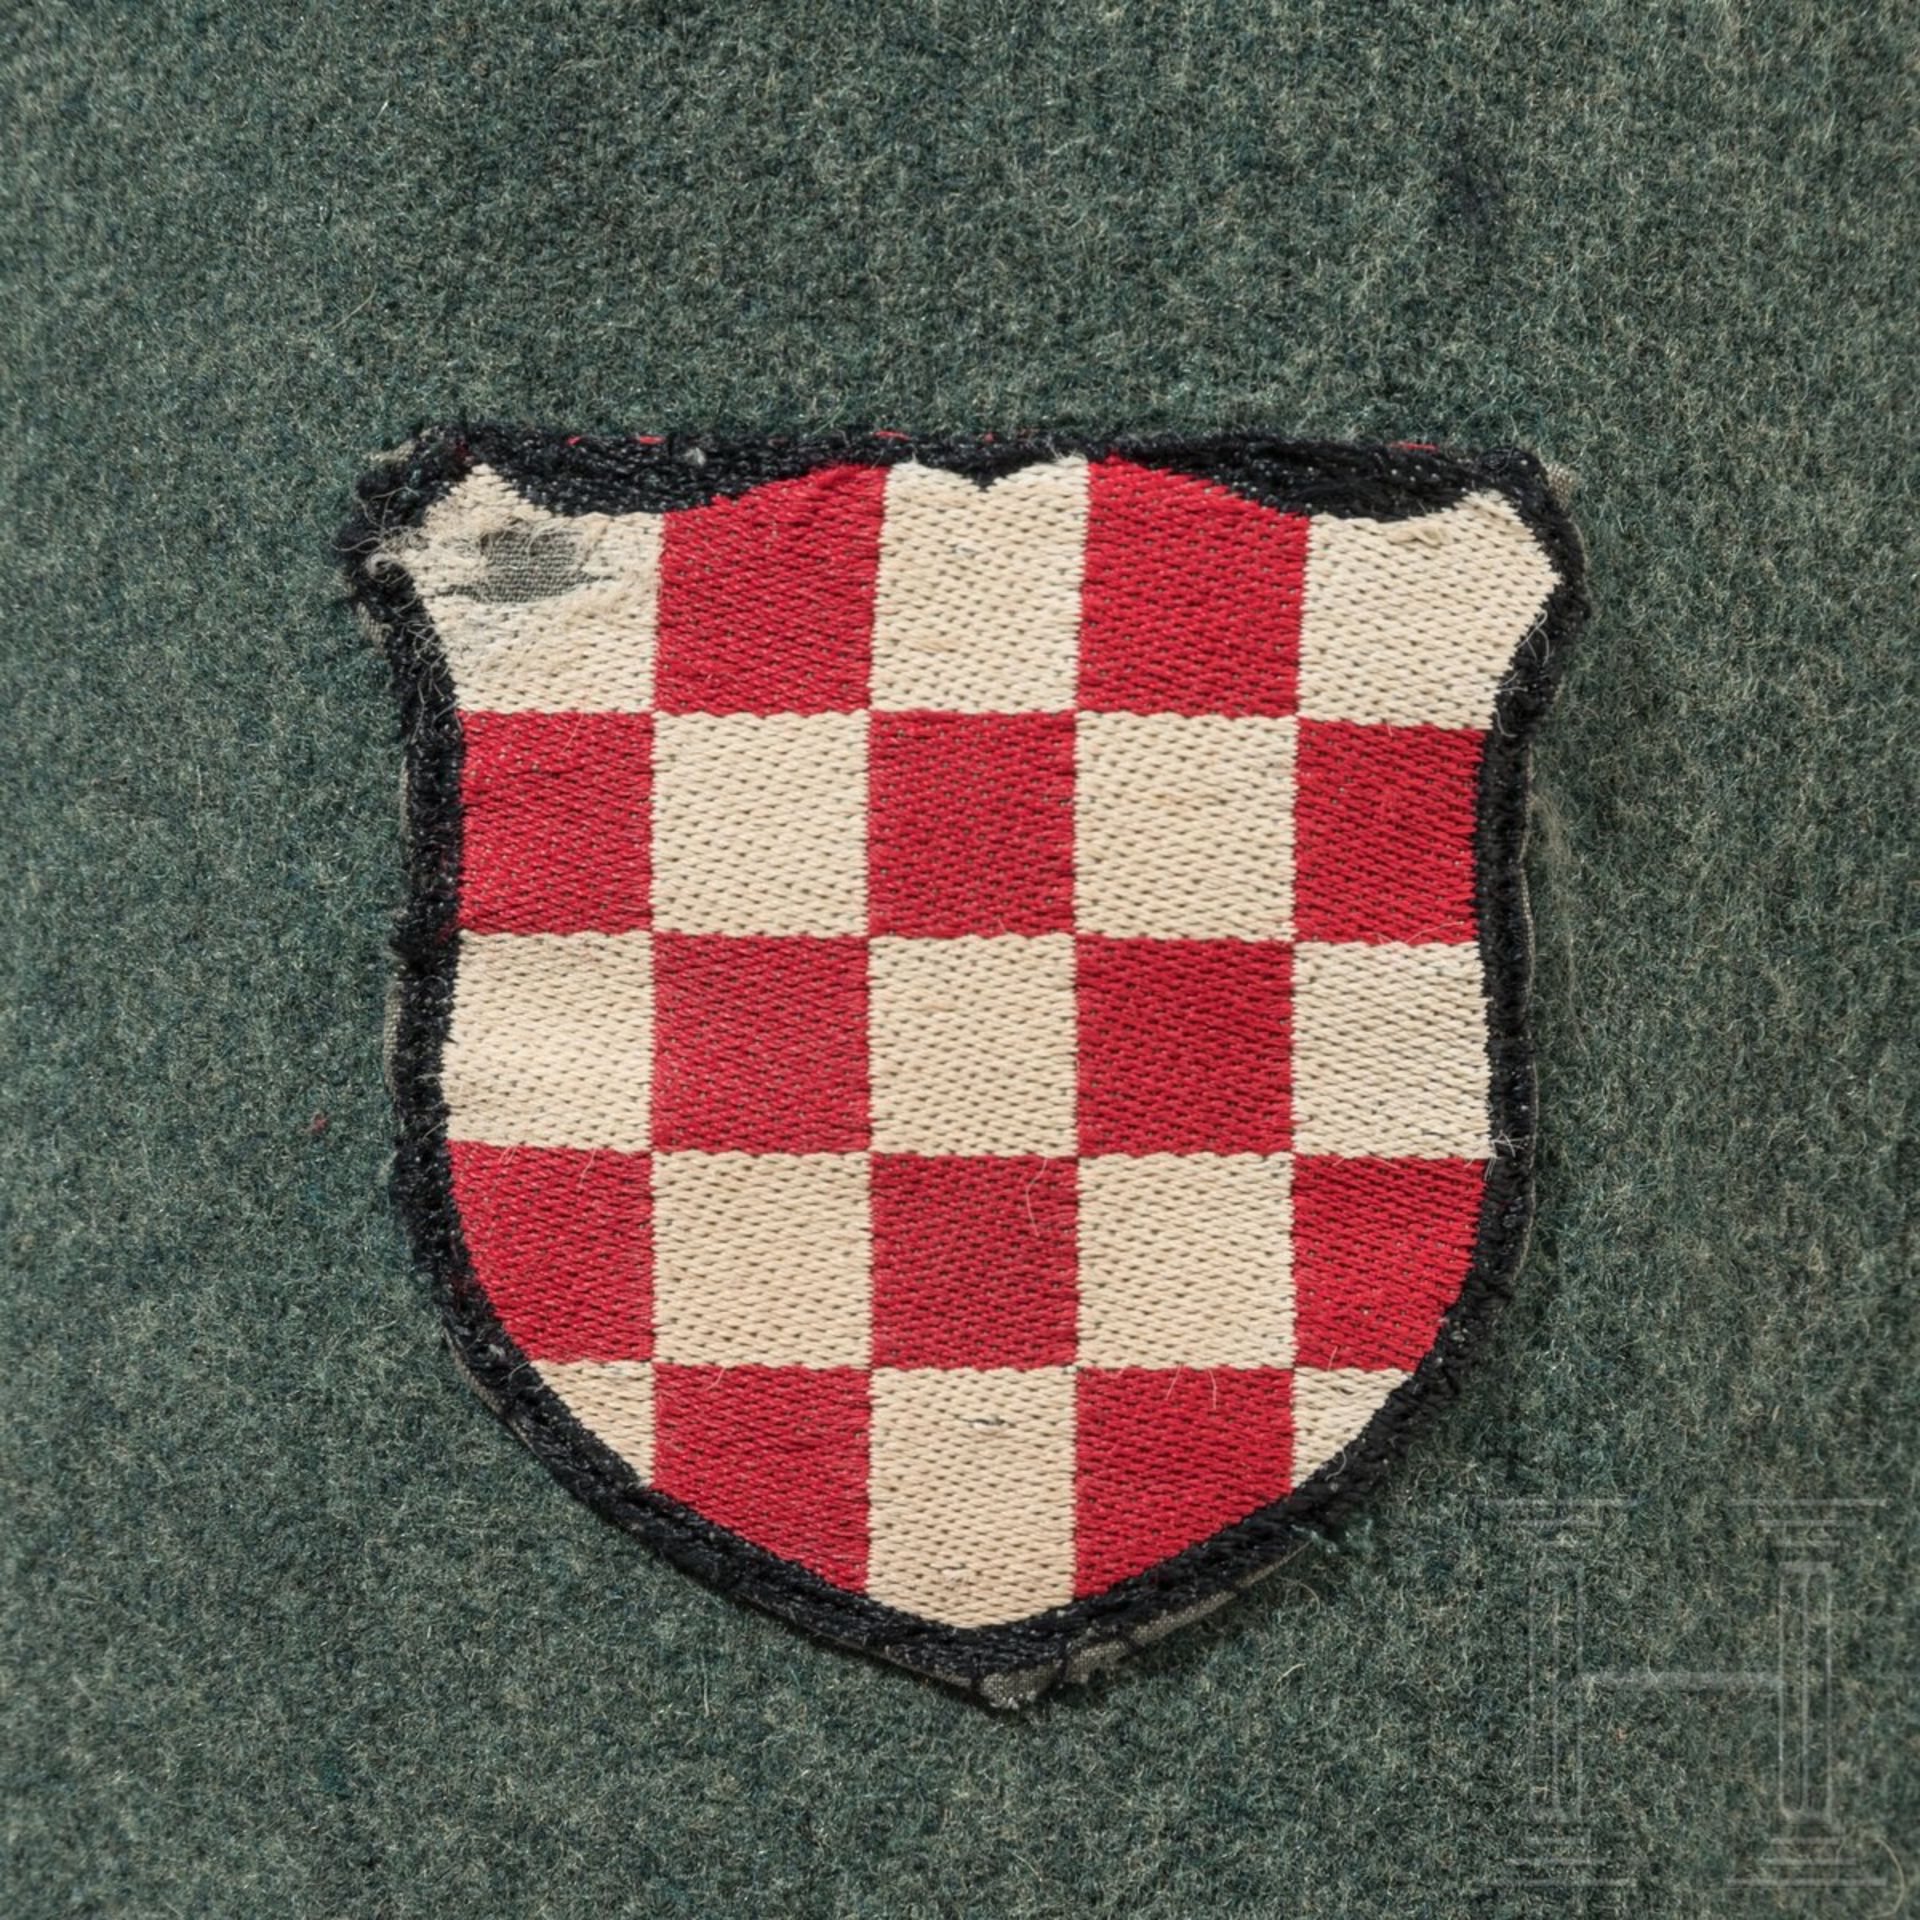 Feldbluse für einen Wachtmeister der kroatischen Schutzpolizei - Image 6 of 8